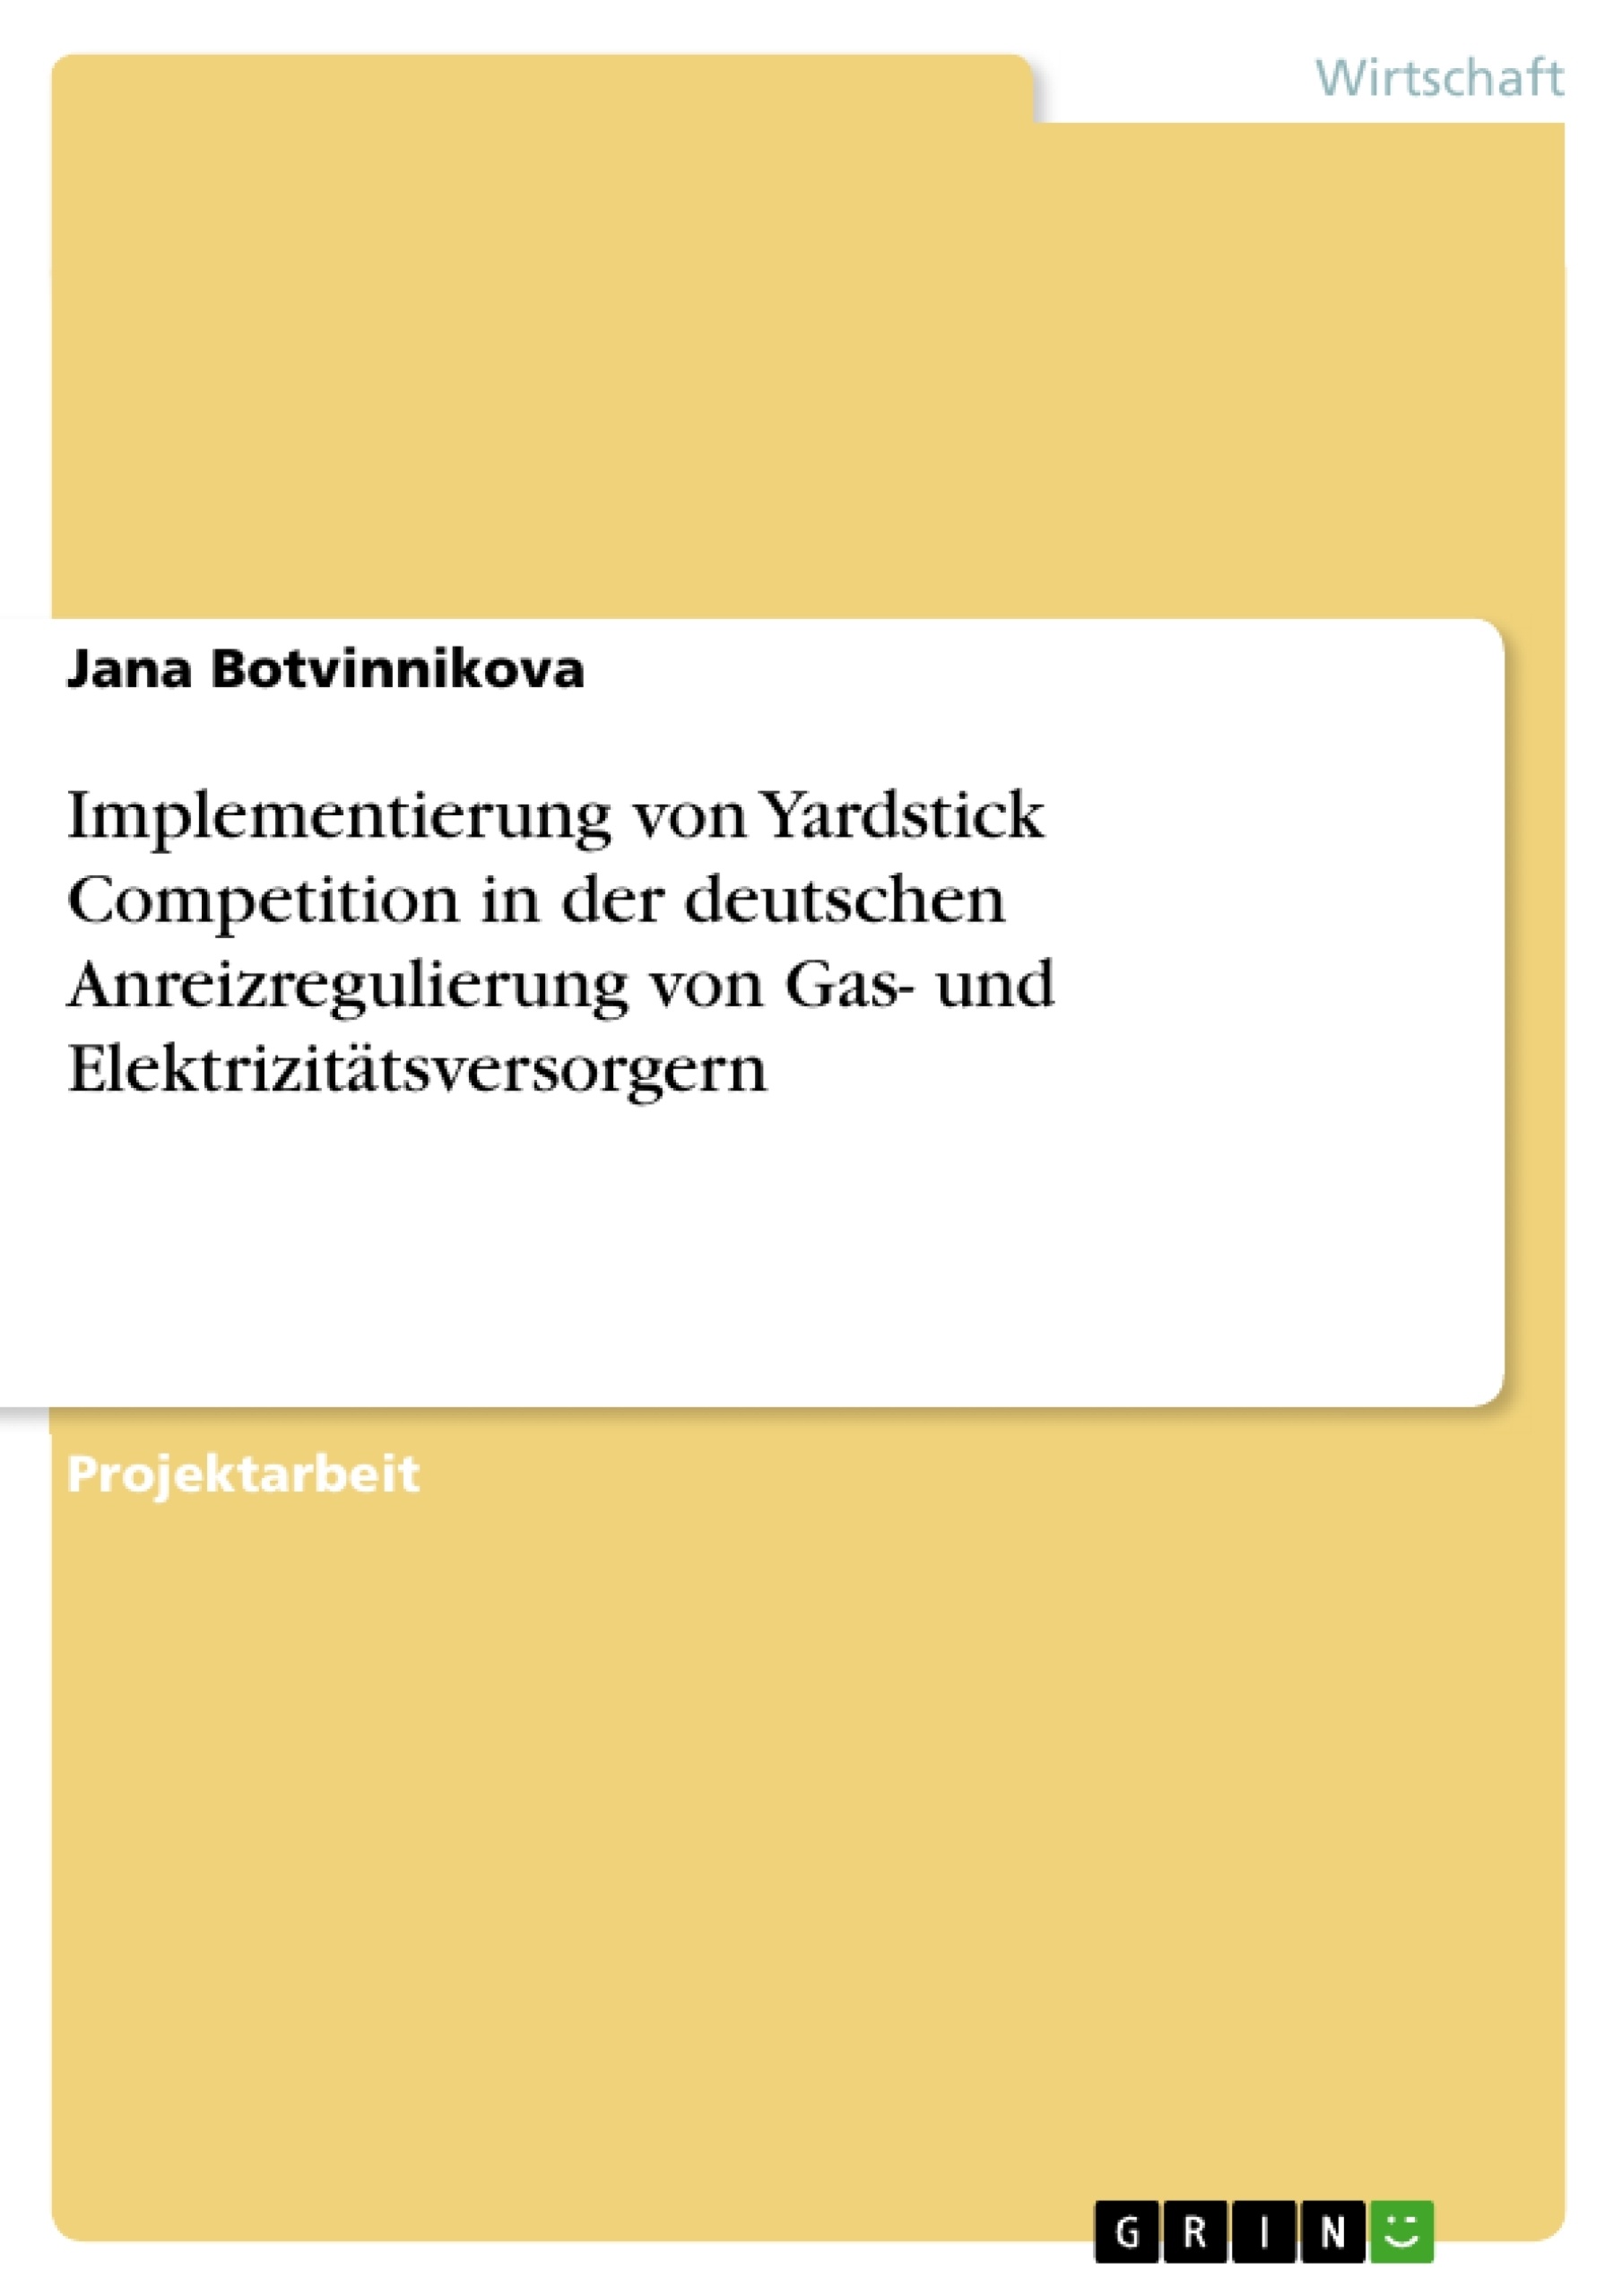 Titre: Implementierung von Yardstick Competition in der deutschen Anreizregulierung von Gas- und Elektrizitätsversorgern